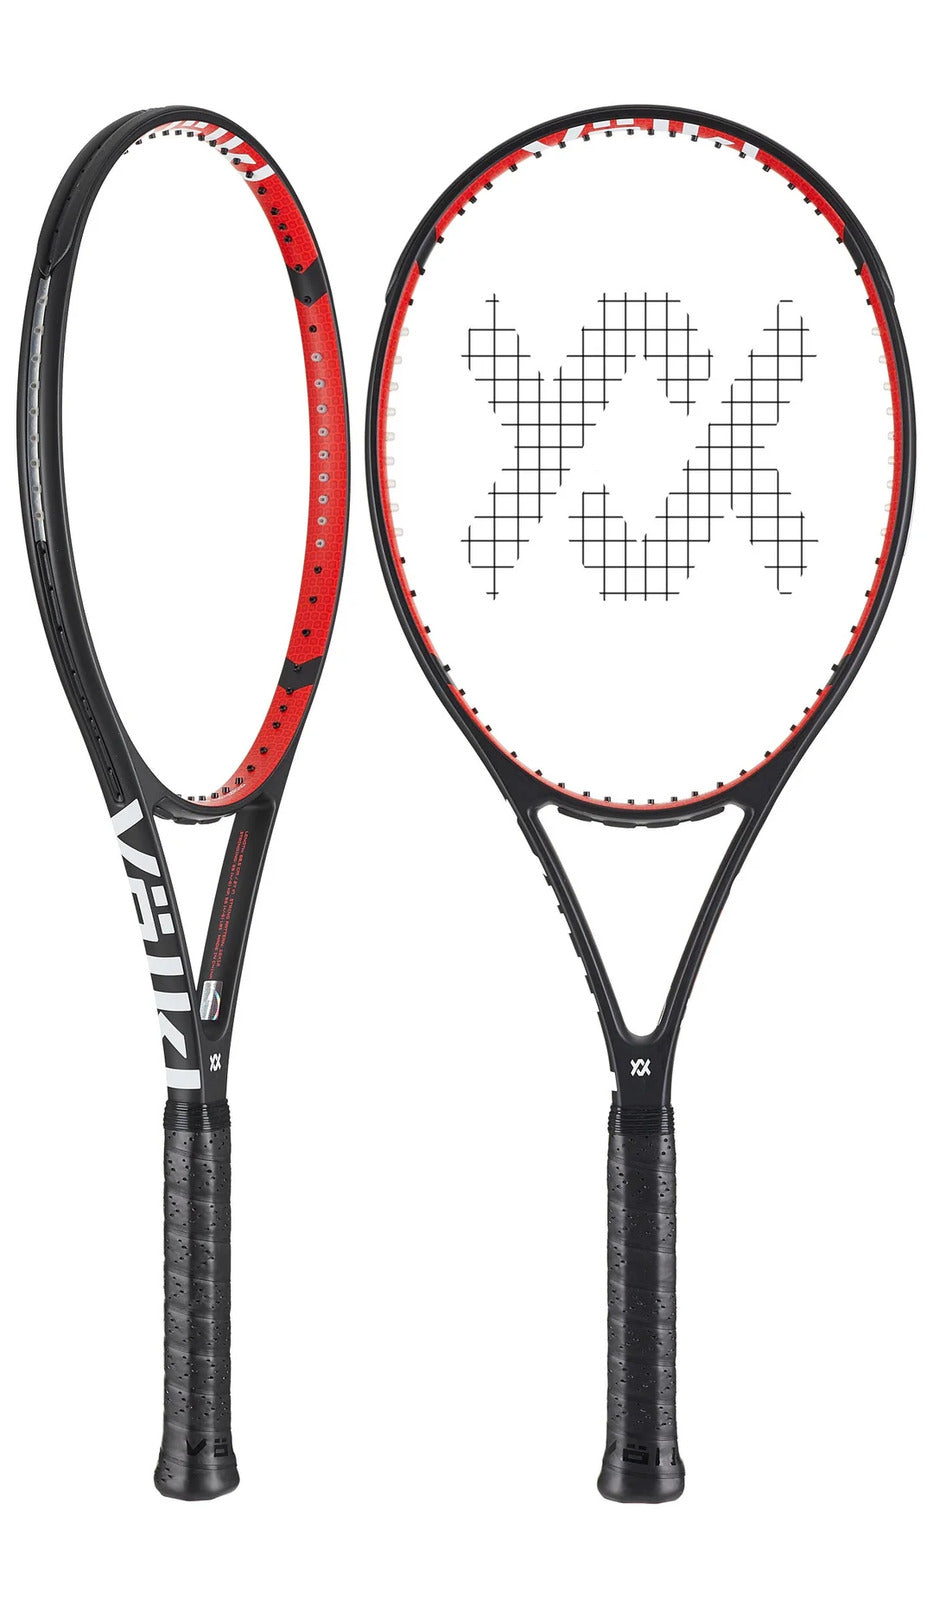 V-CELL 8 285g Tennis Racquet Racket - Unstrung - 4 3/8